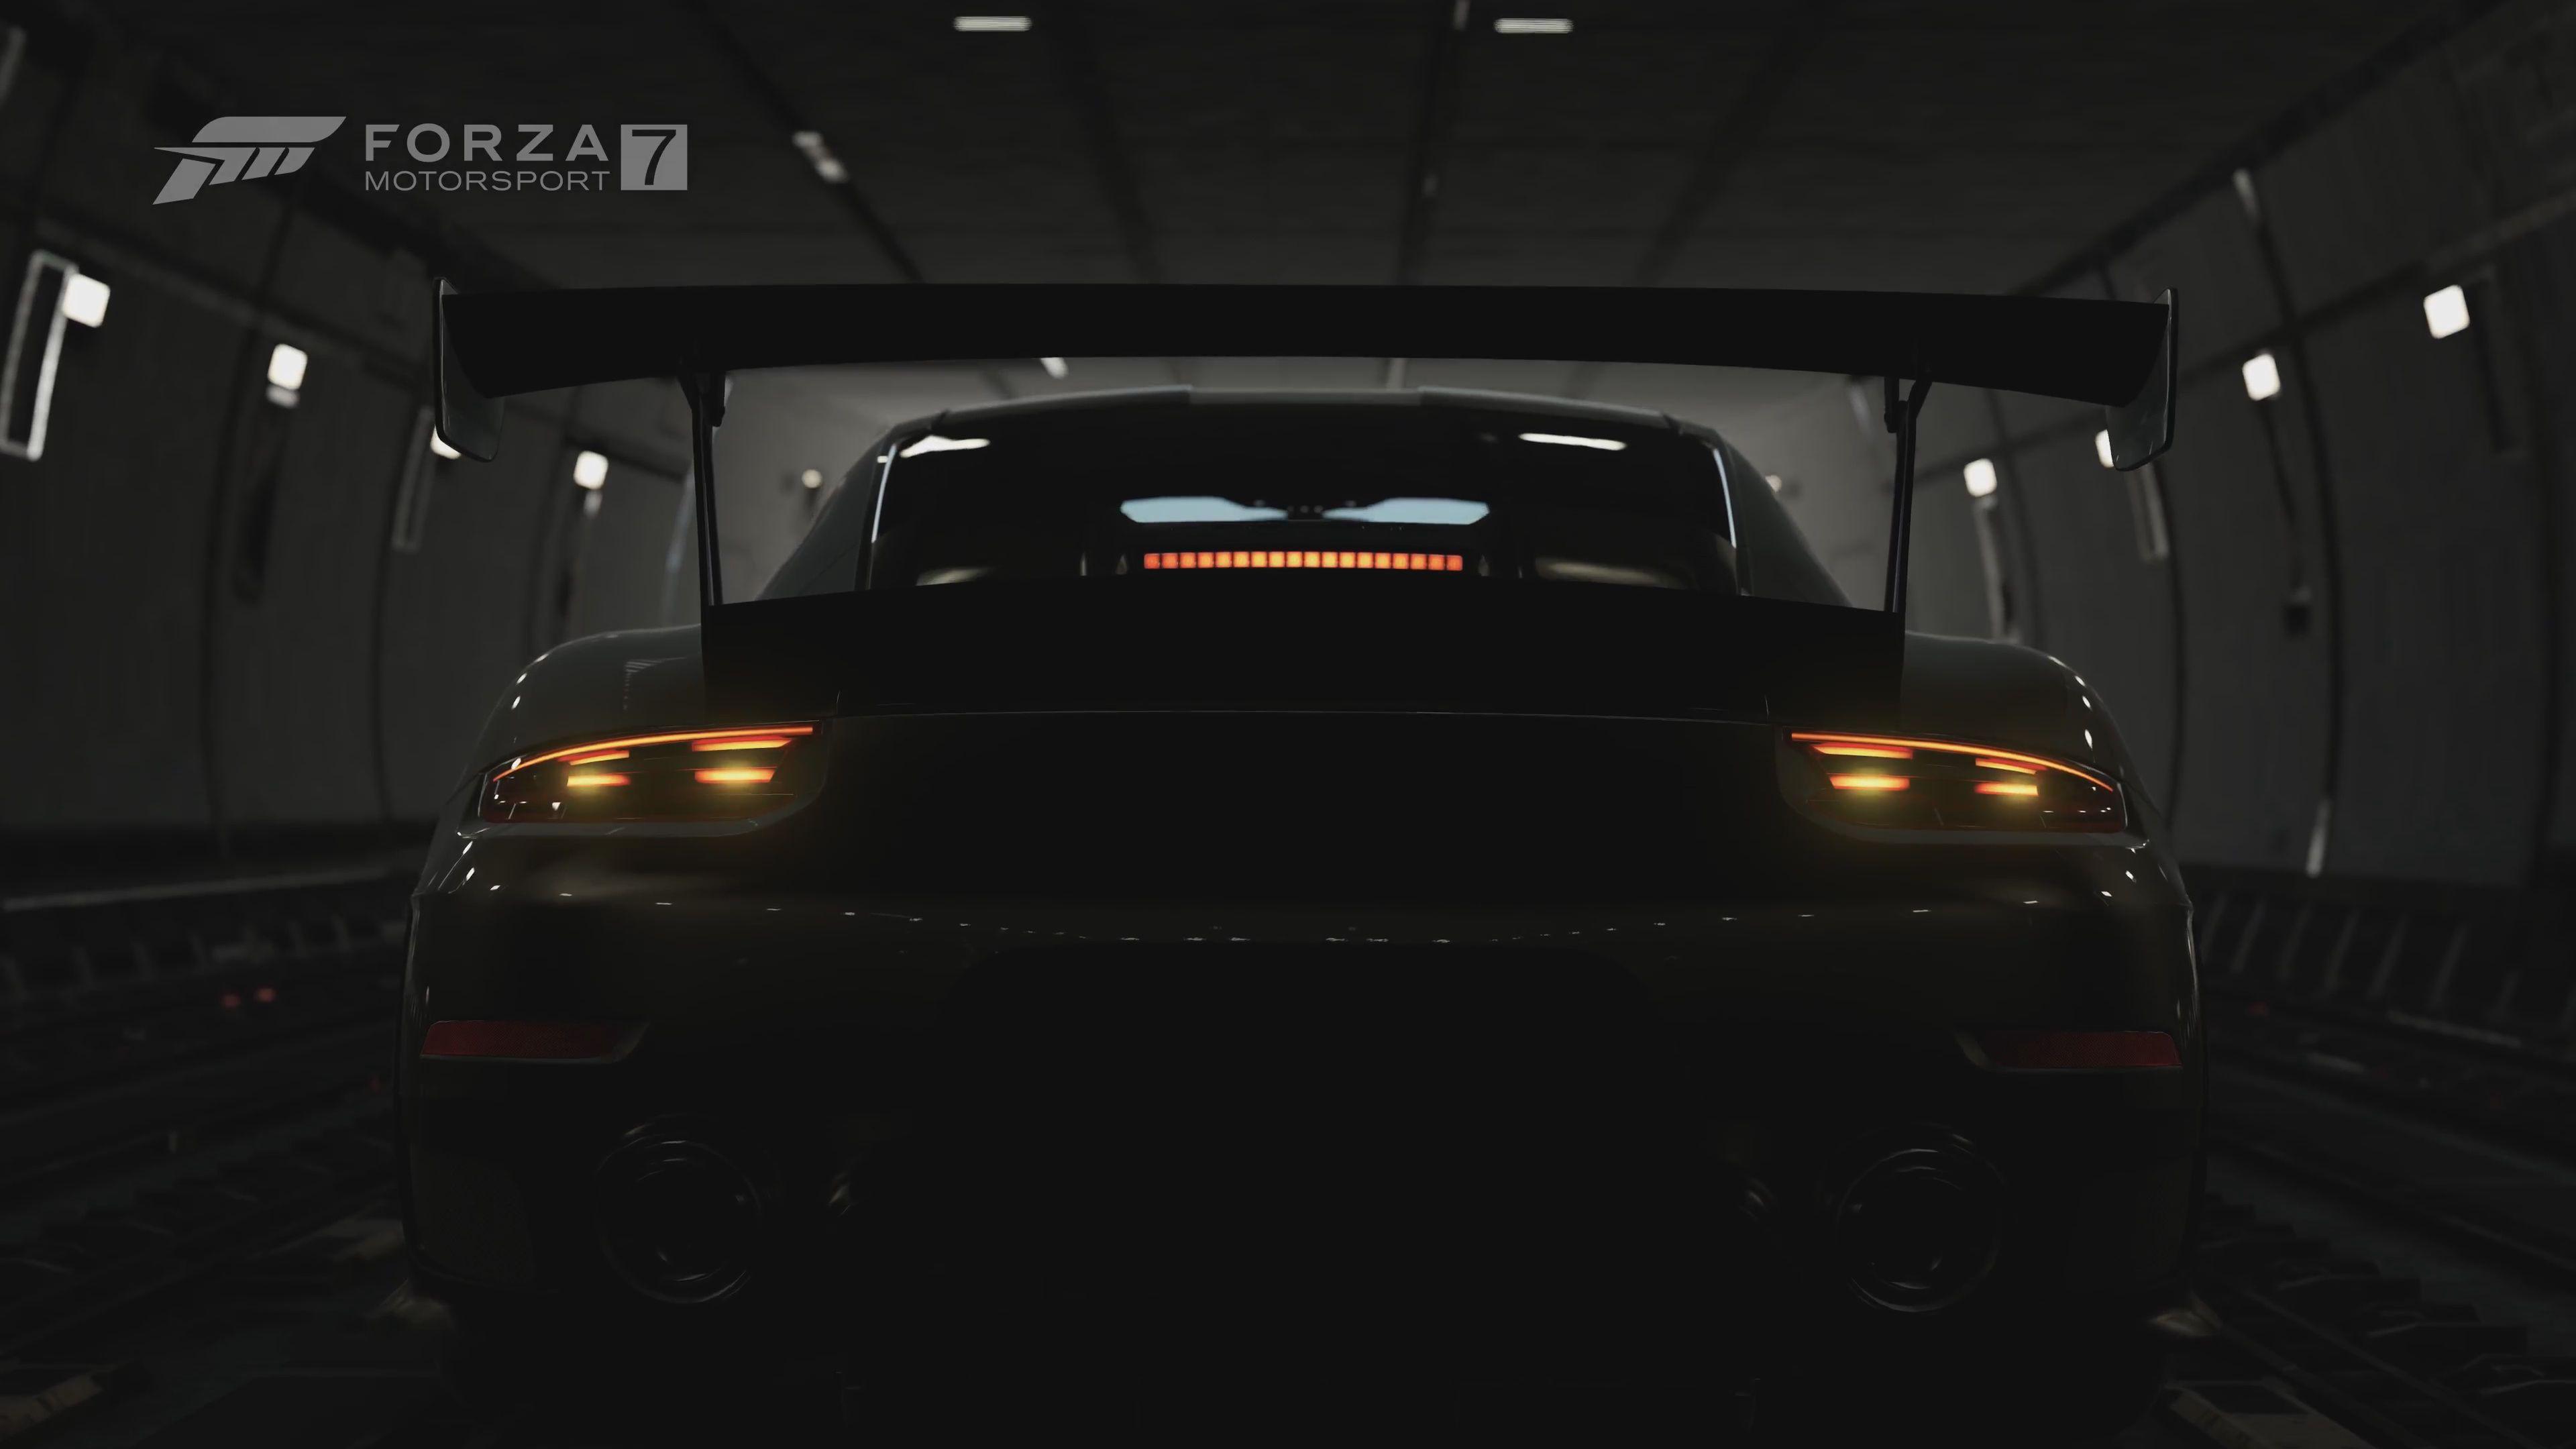 2018 Porsche 911 GT2 RS Forza Motorsport 7 4K Wallpapers